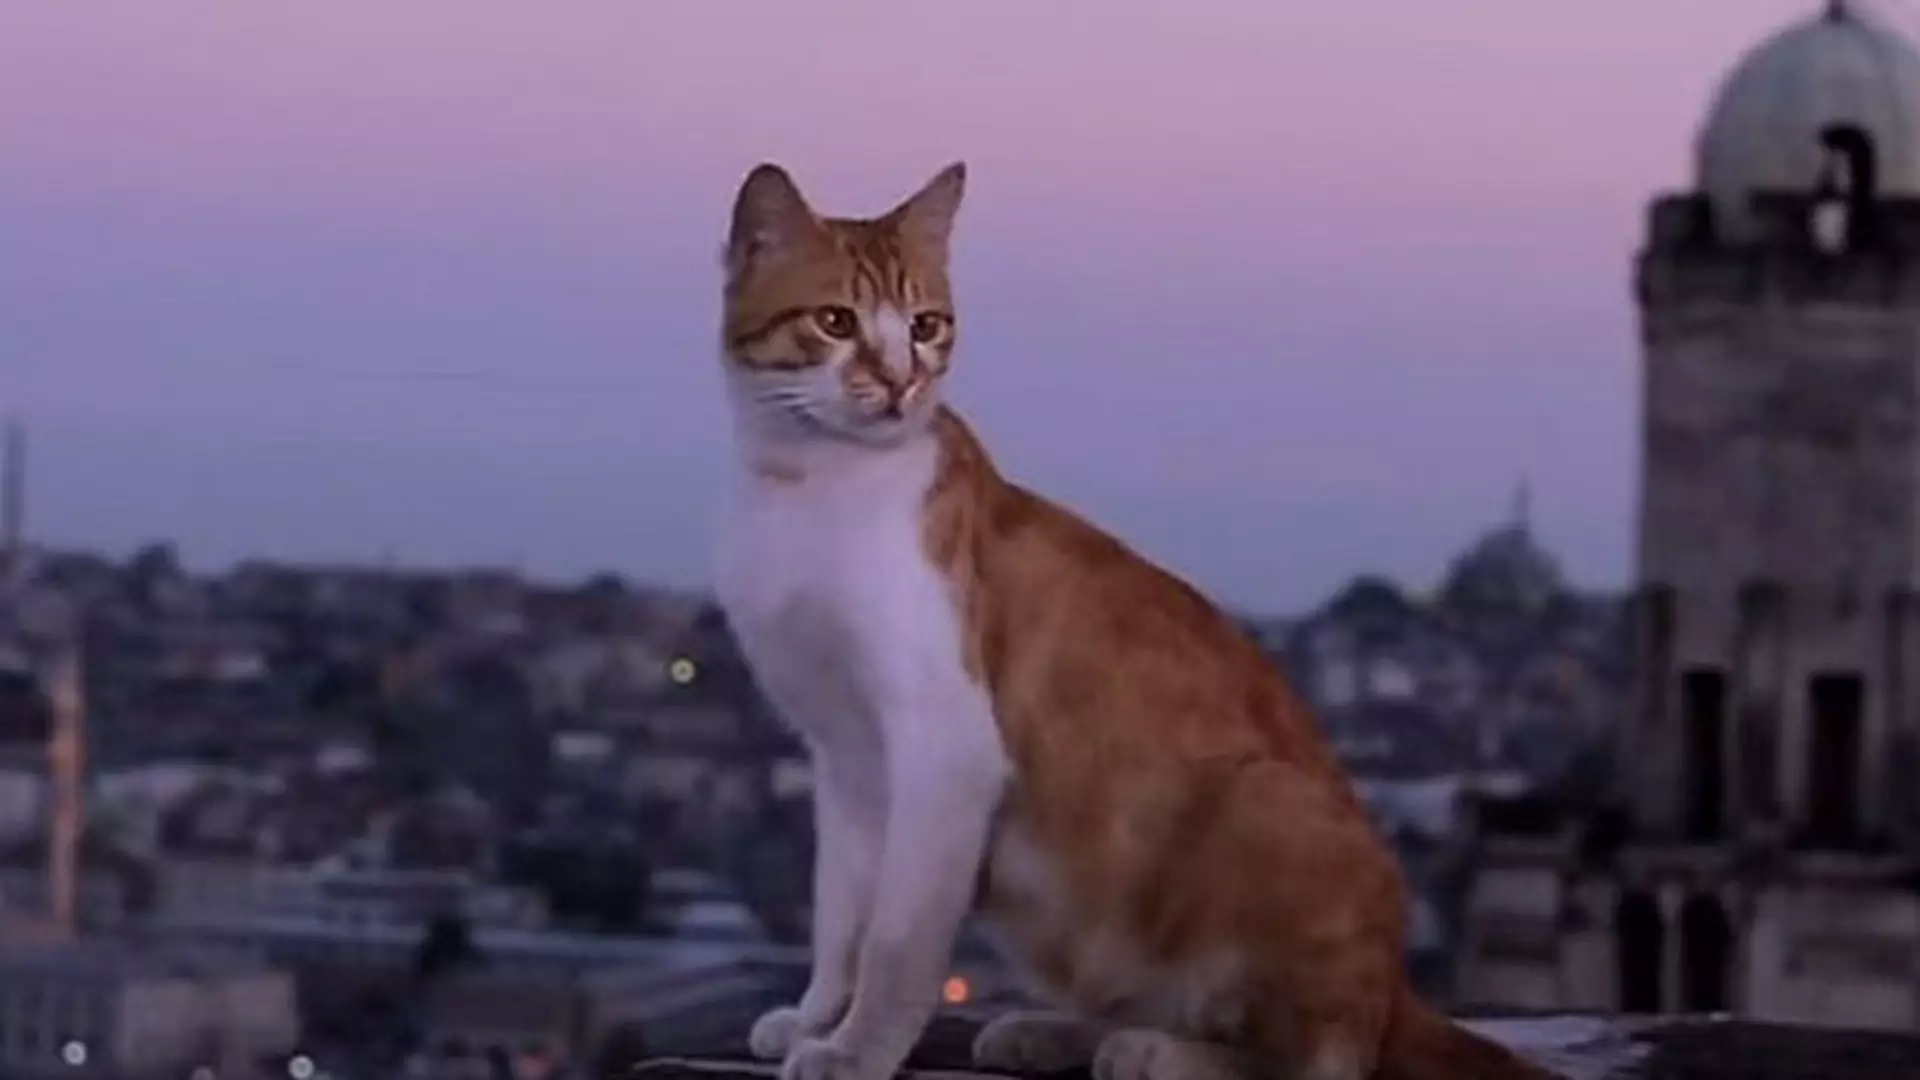 Kochasz koty? Film "Kedi" to najpiękniejszy dokument tego lata